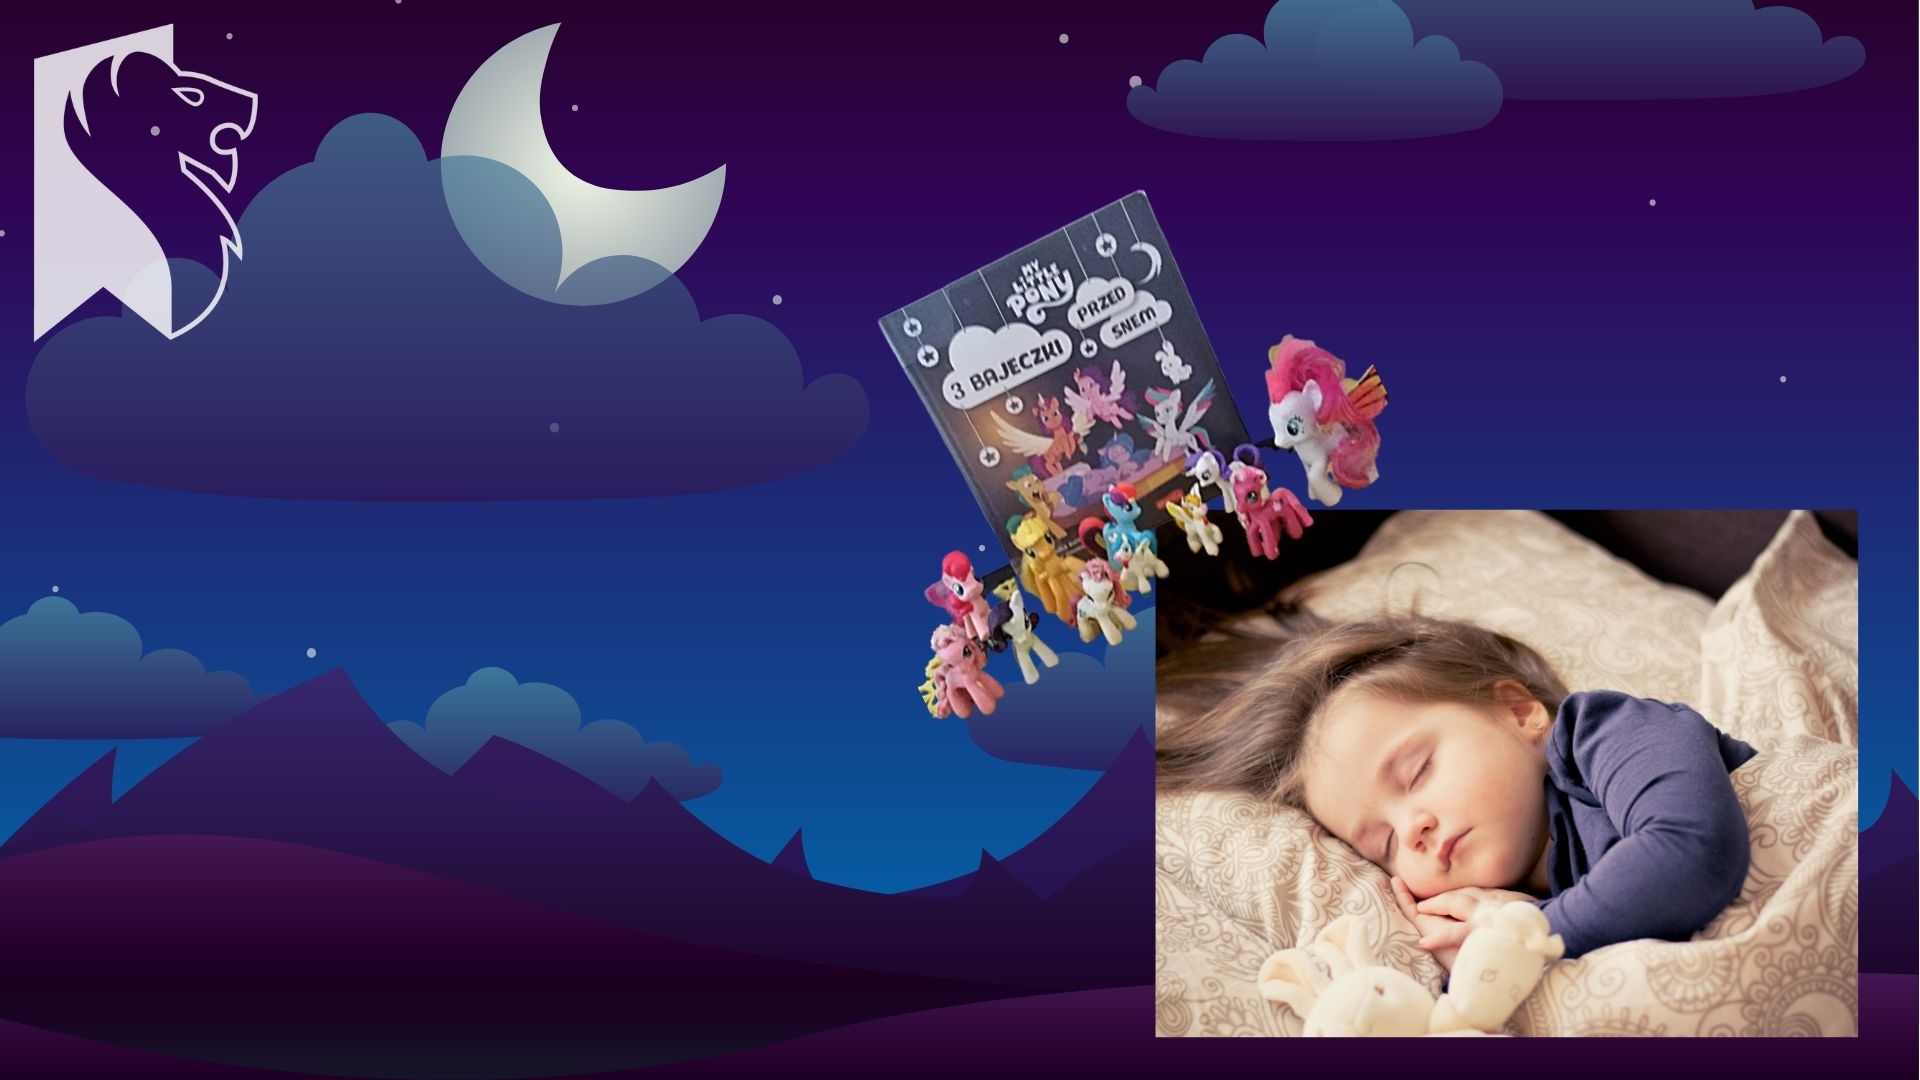 Noc, chmurki oraz księżyc za nimi. W prawym, dolnym rogu śpi małe dziecko. Nad głową dziecka 11 kucyków Ponny, różnej wielkości oraz książka 3 Bajeczki przed snem.